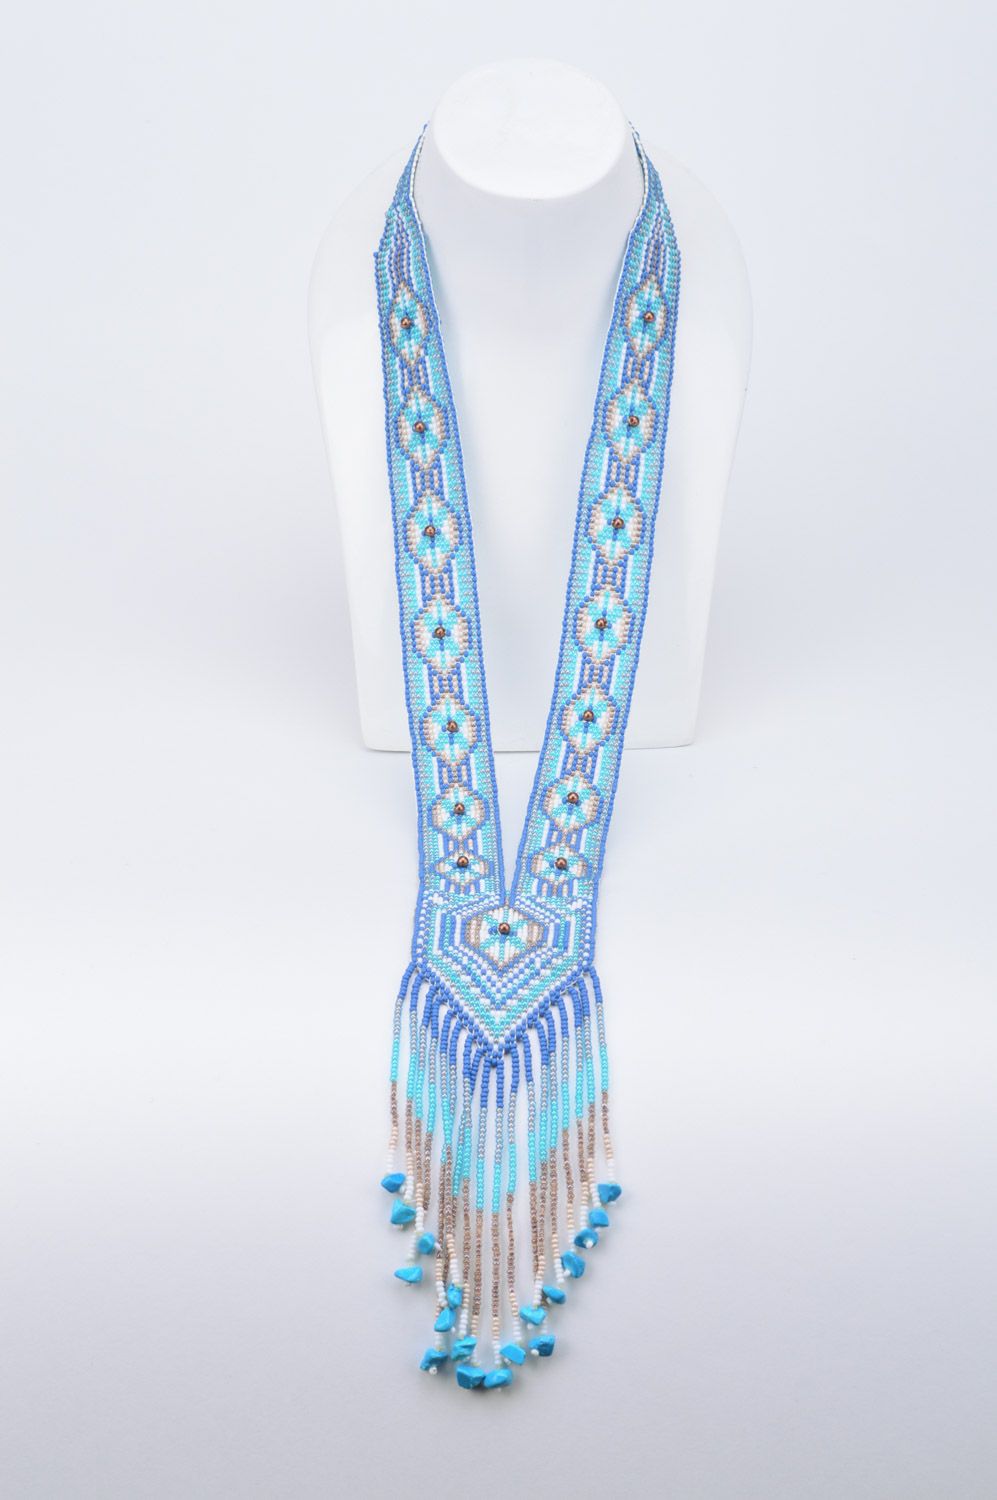 Голубой гердан из чешского бисера ручной работы длинный с узорами в этно стиле фото 1